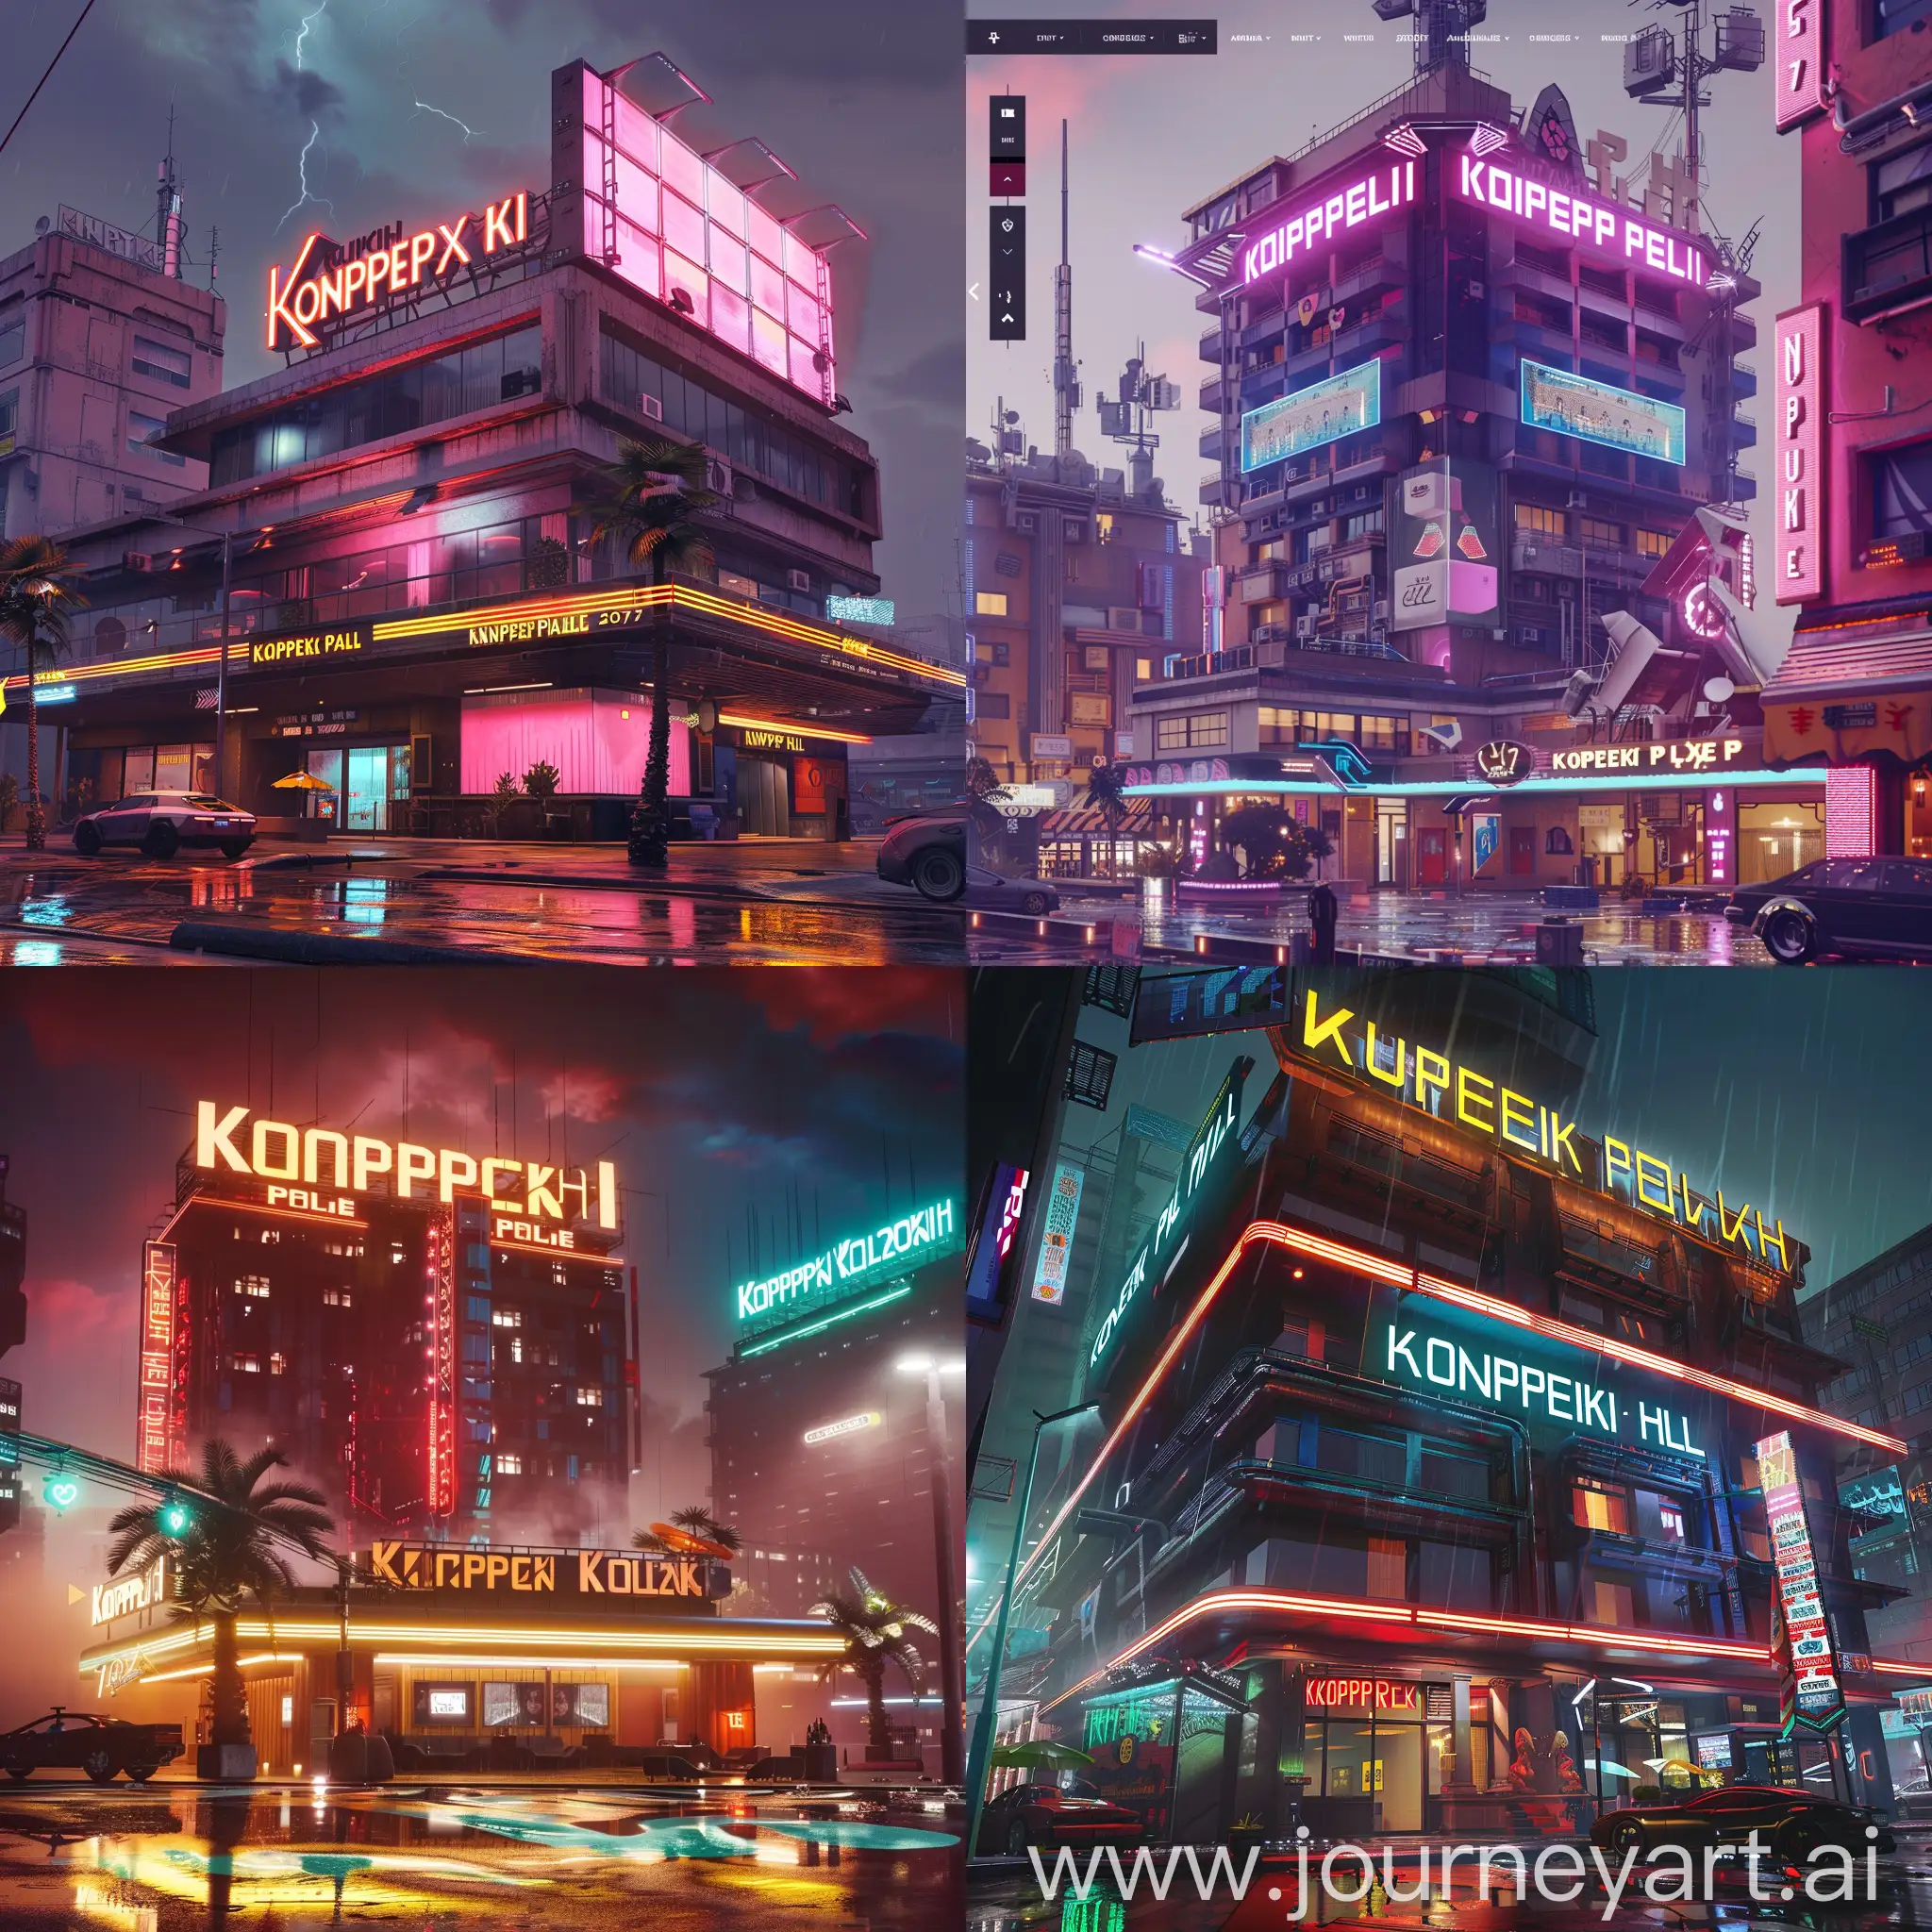 Futuristic-Hotel-Design-Inspired-by-Cyberpunk-2077